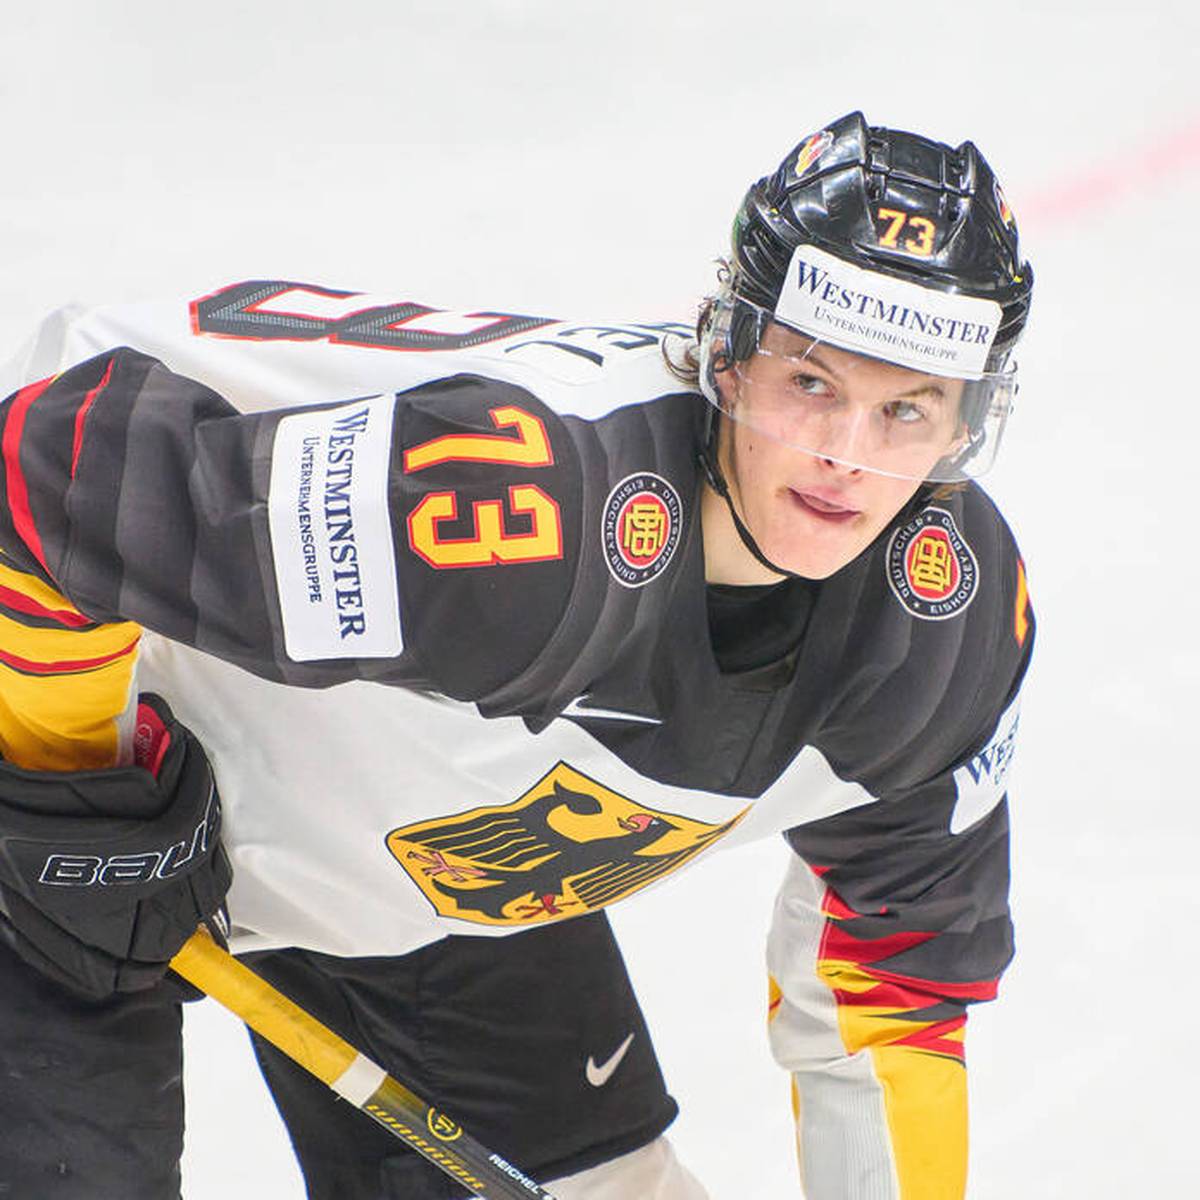 Eishockey-Talent Lukas Reichel feiert ein erfolgreiches Debüt in der NHL. Der 19-Jährige gewinnt sein erstes Spiel mit den Chicago Blackhawks.